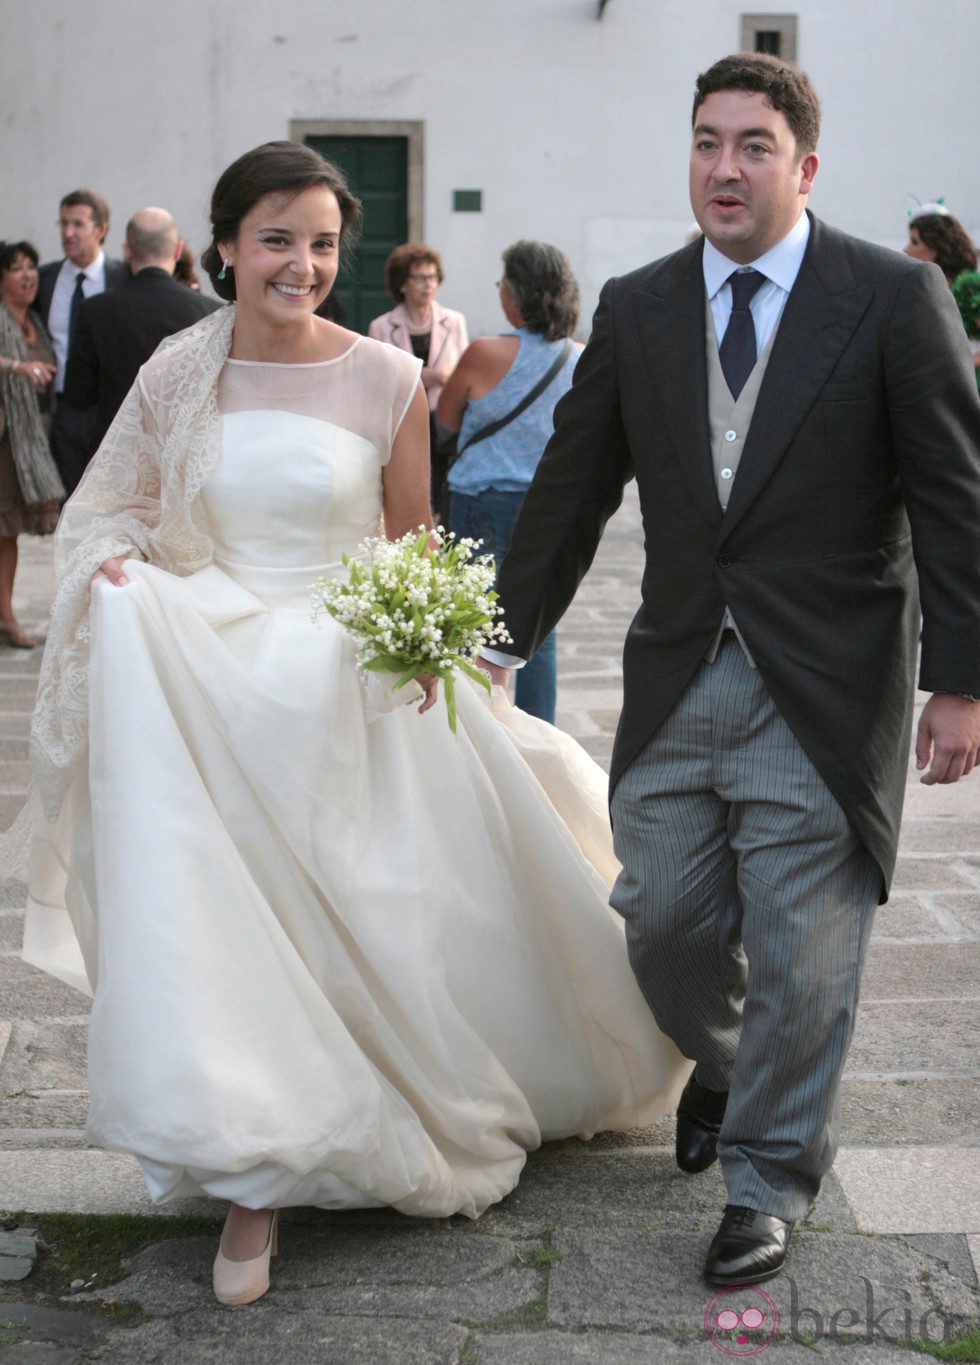 Alberto Ruiz Gallardón Utrera y María Teresa Touriñán Morandeira tras casarse en Santiago